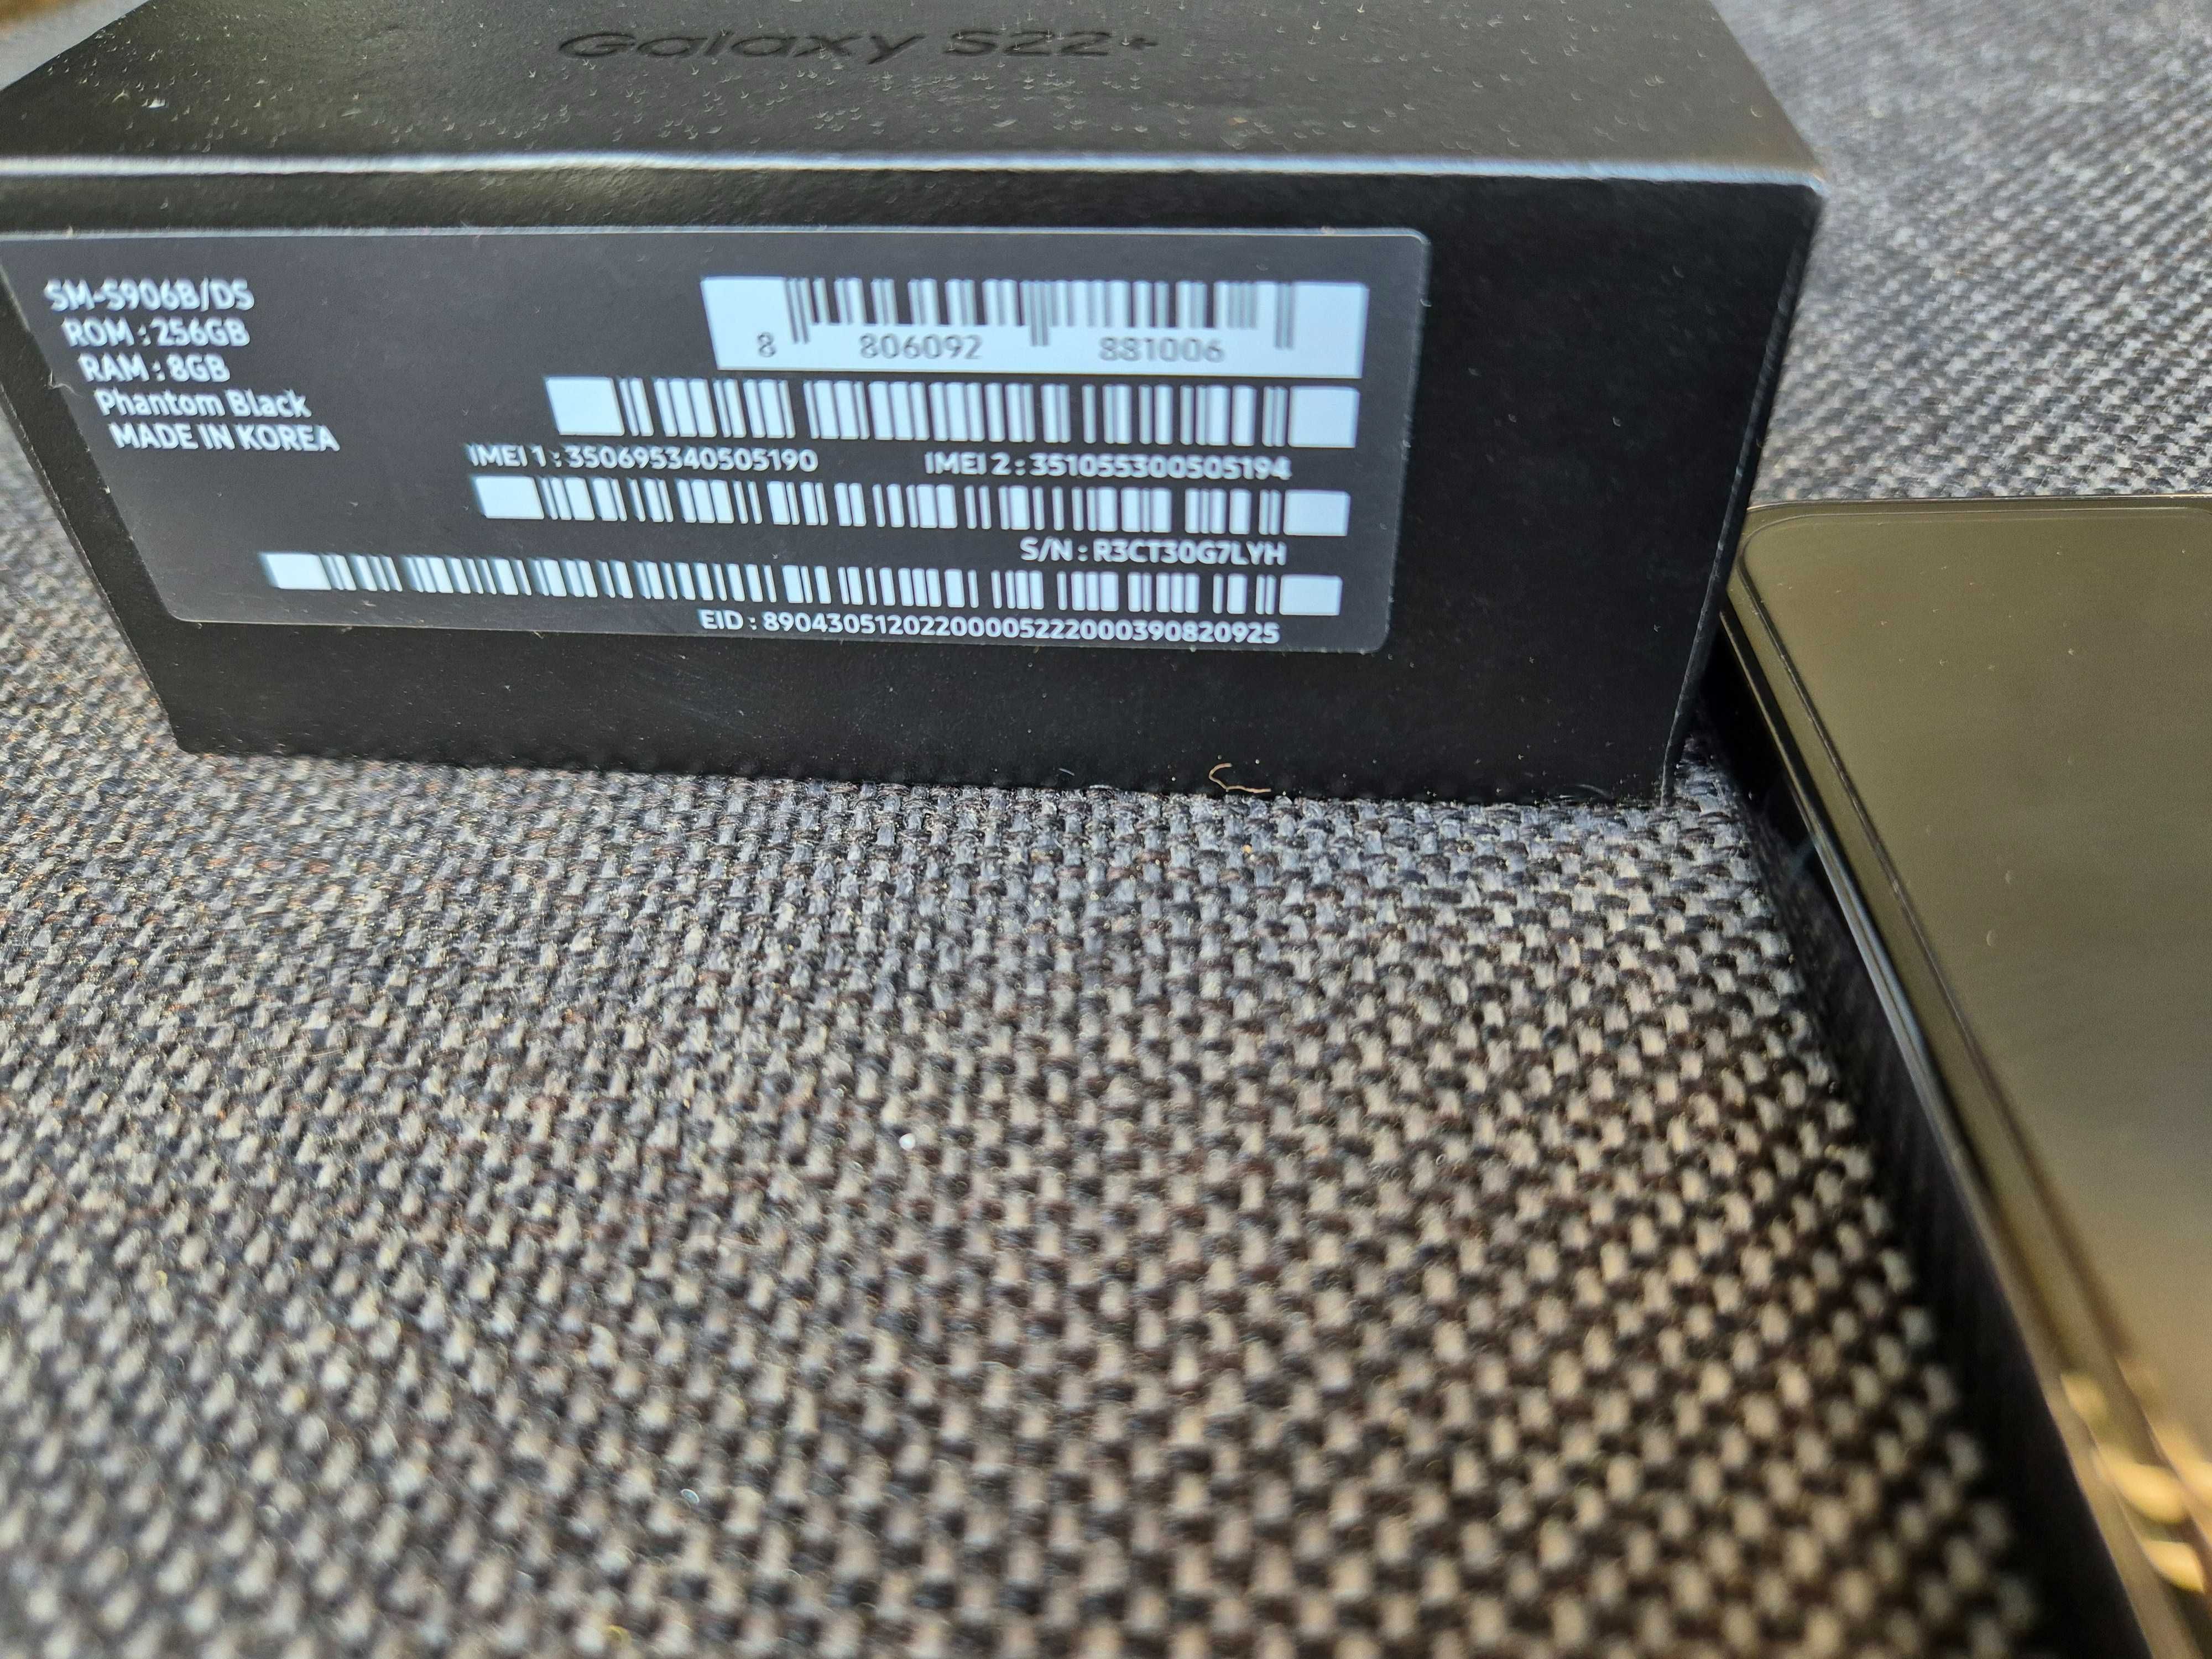 Samsung S22 plus 256MB, SM-5906B/DS 8/256 GB, phantom black